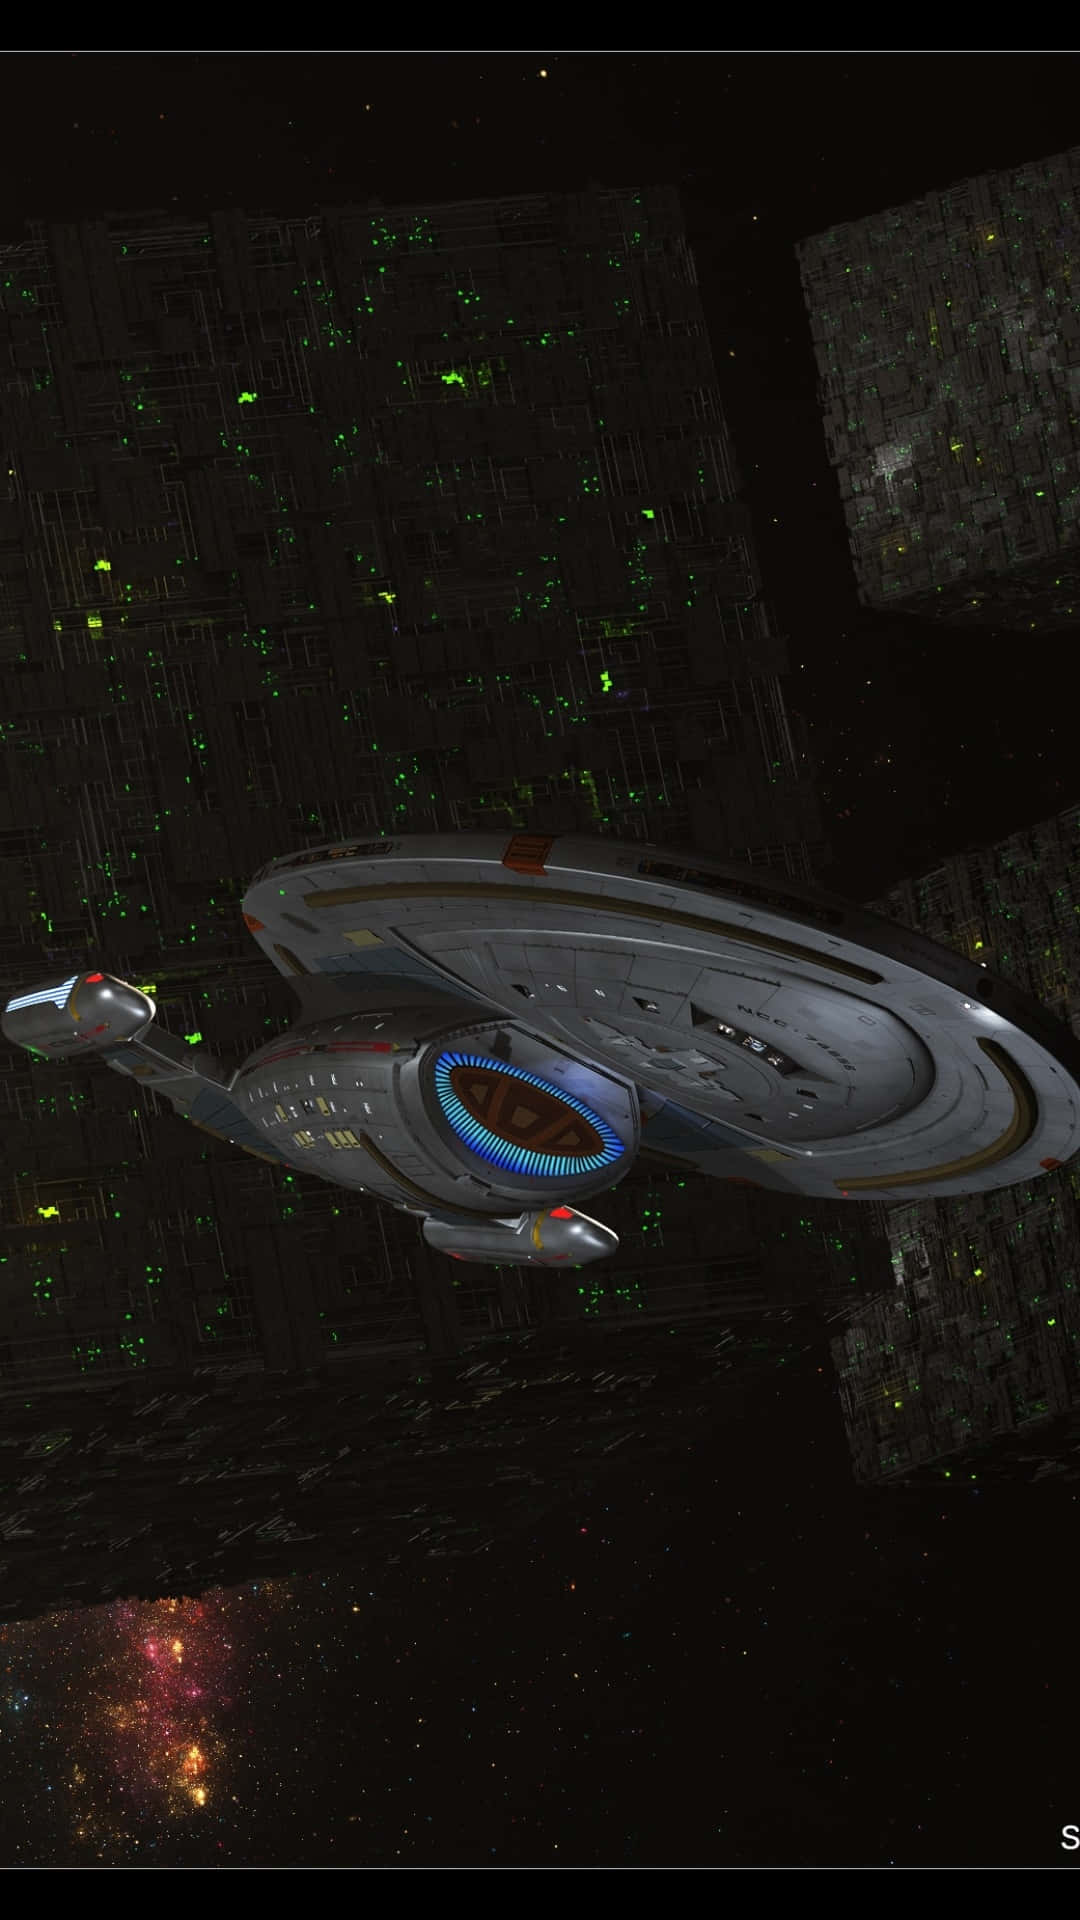 Estrellasde Star Trek En El Teléfono. Enterprise Y Objetos Espaciales. Fondo de pantalla